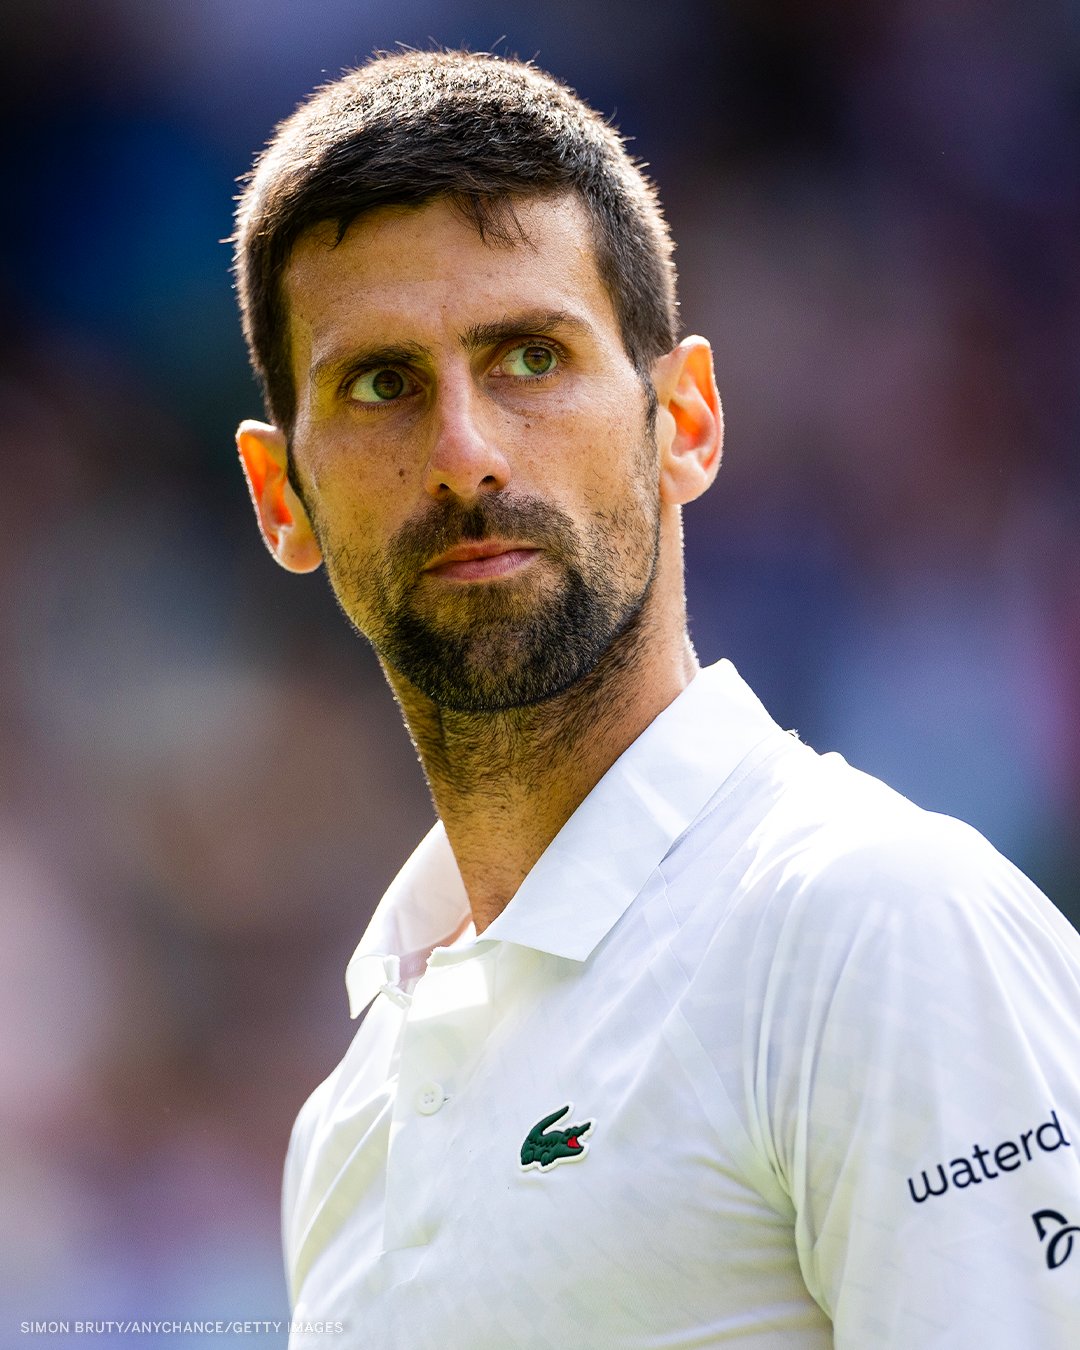 [情報] Novak Djokovic 退出加拿大大師賽